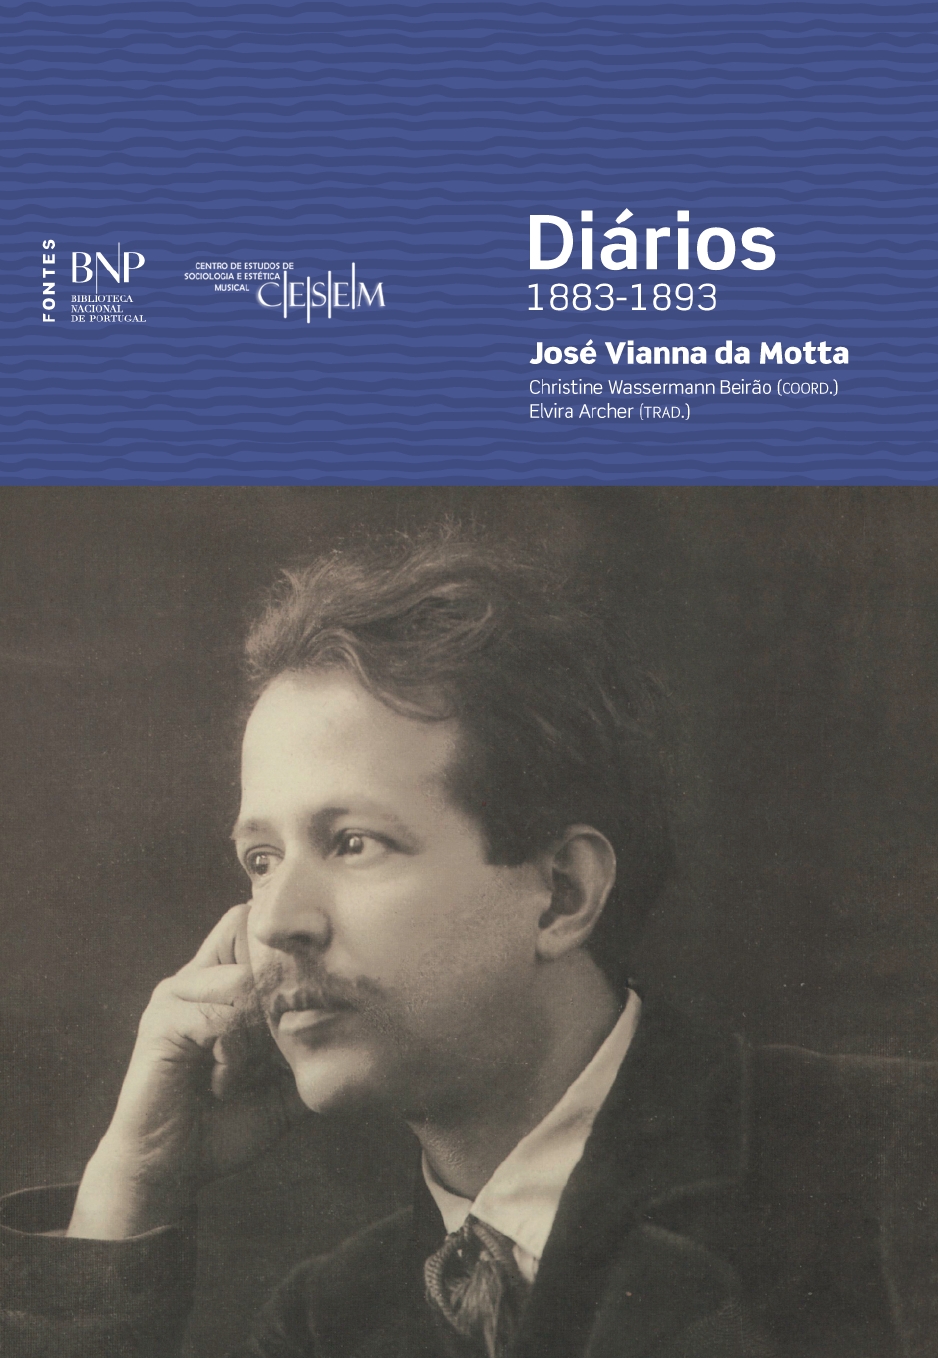 Diários - 1883-1893 José Vianna da Motta (1868-1948)